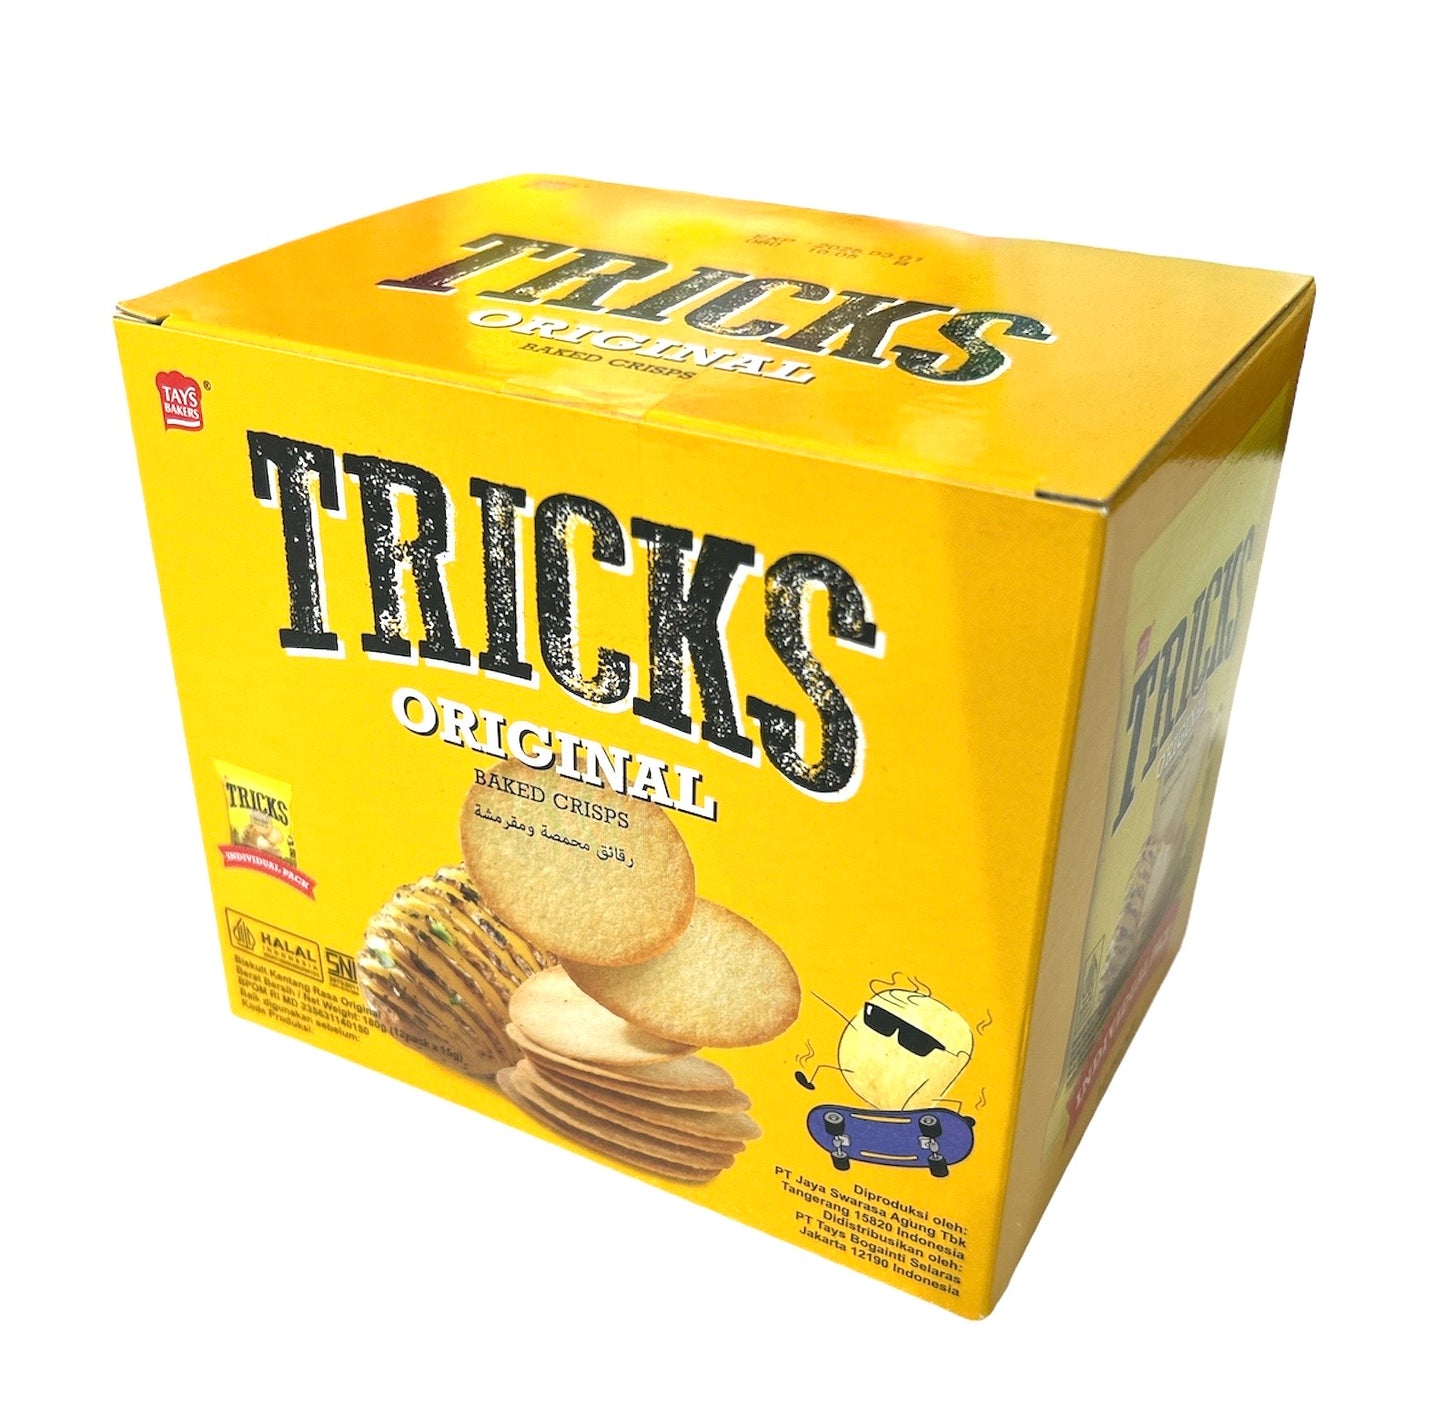 TRICKS Baked Chips Original ベイクトチップス オリジナル